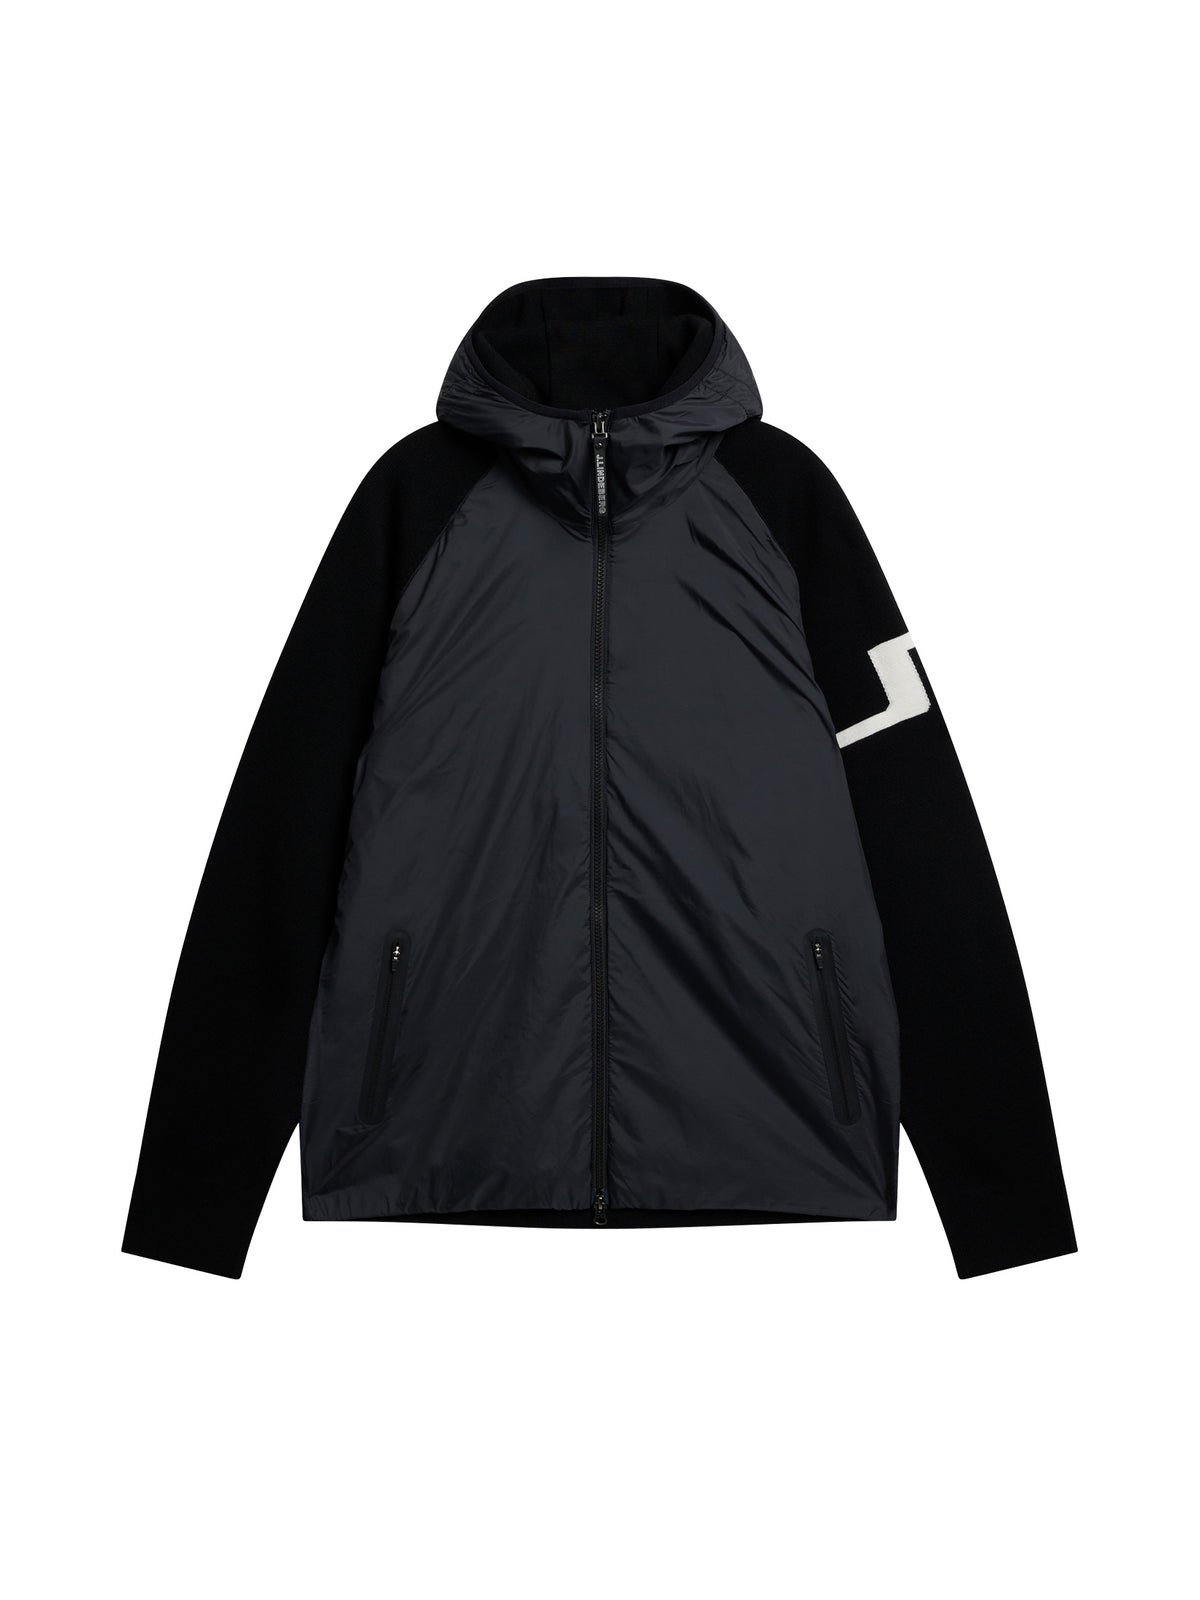 Cascade Hybrid Hood Jacket / Black